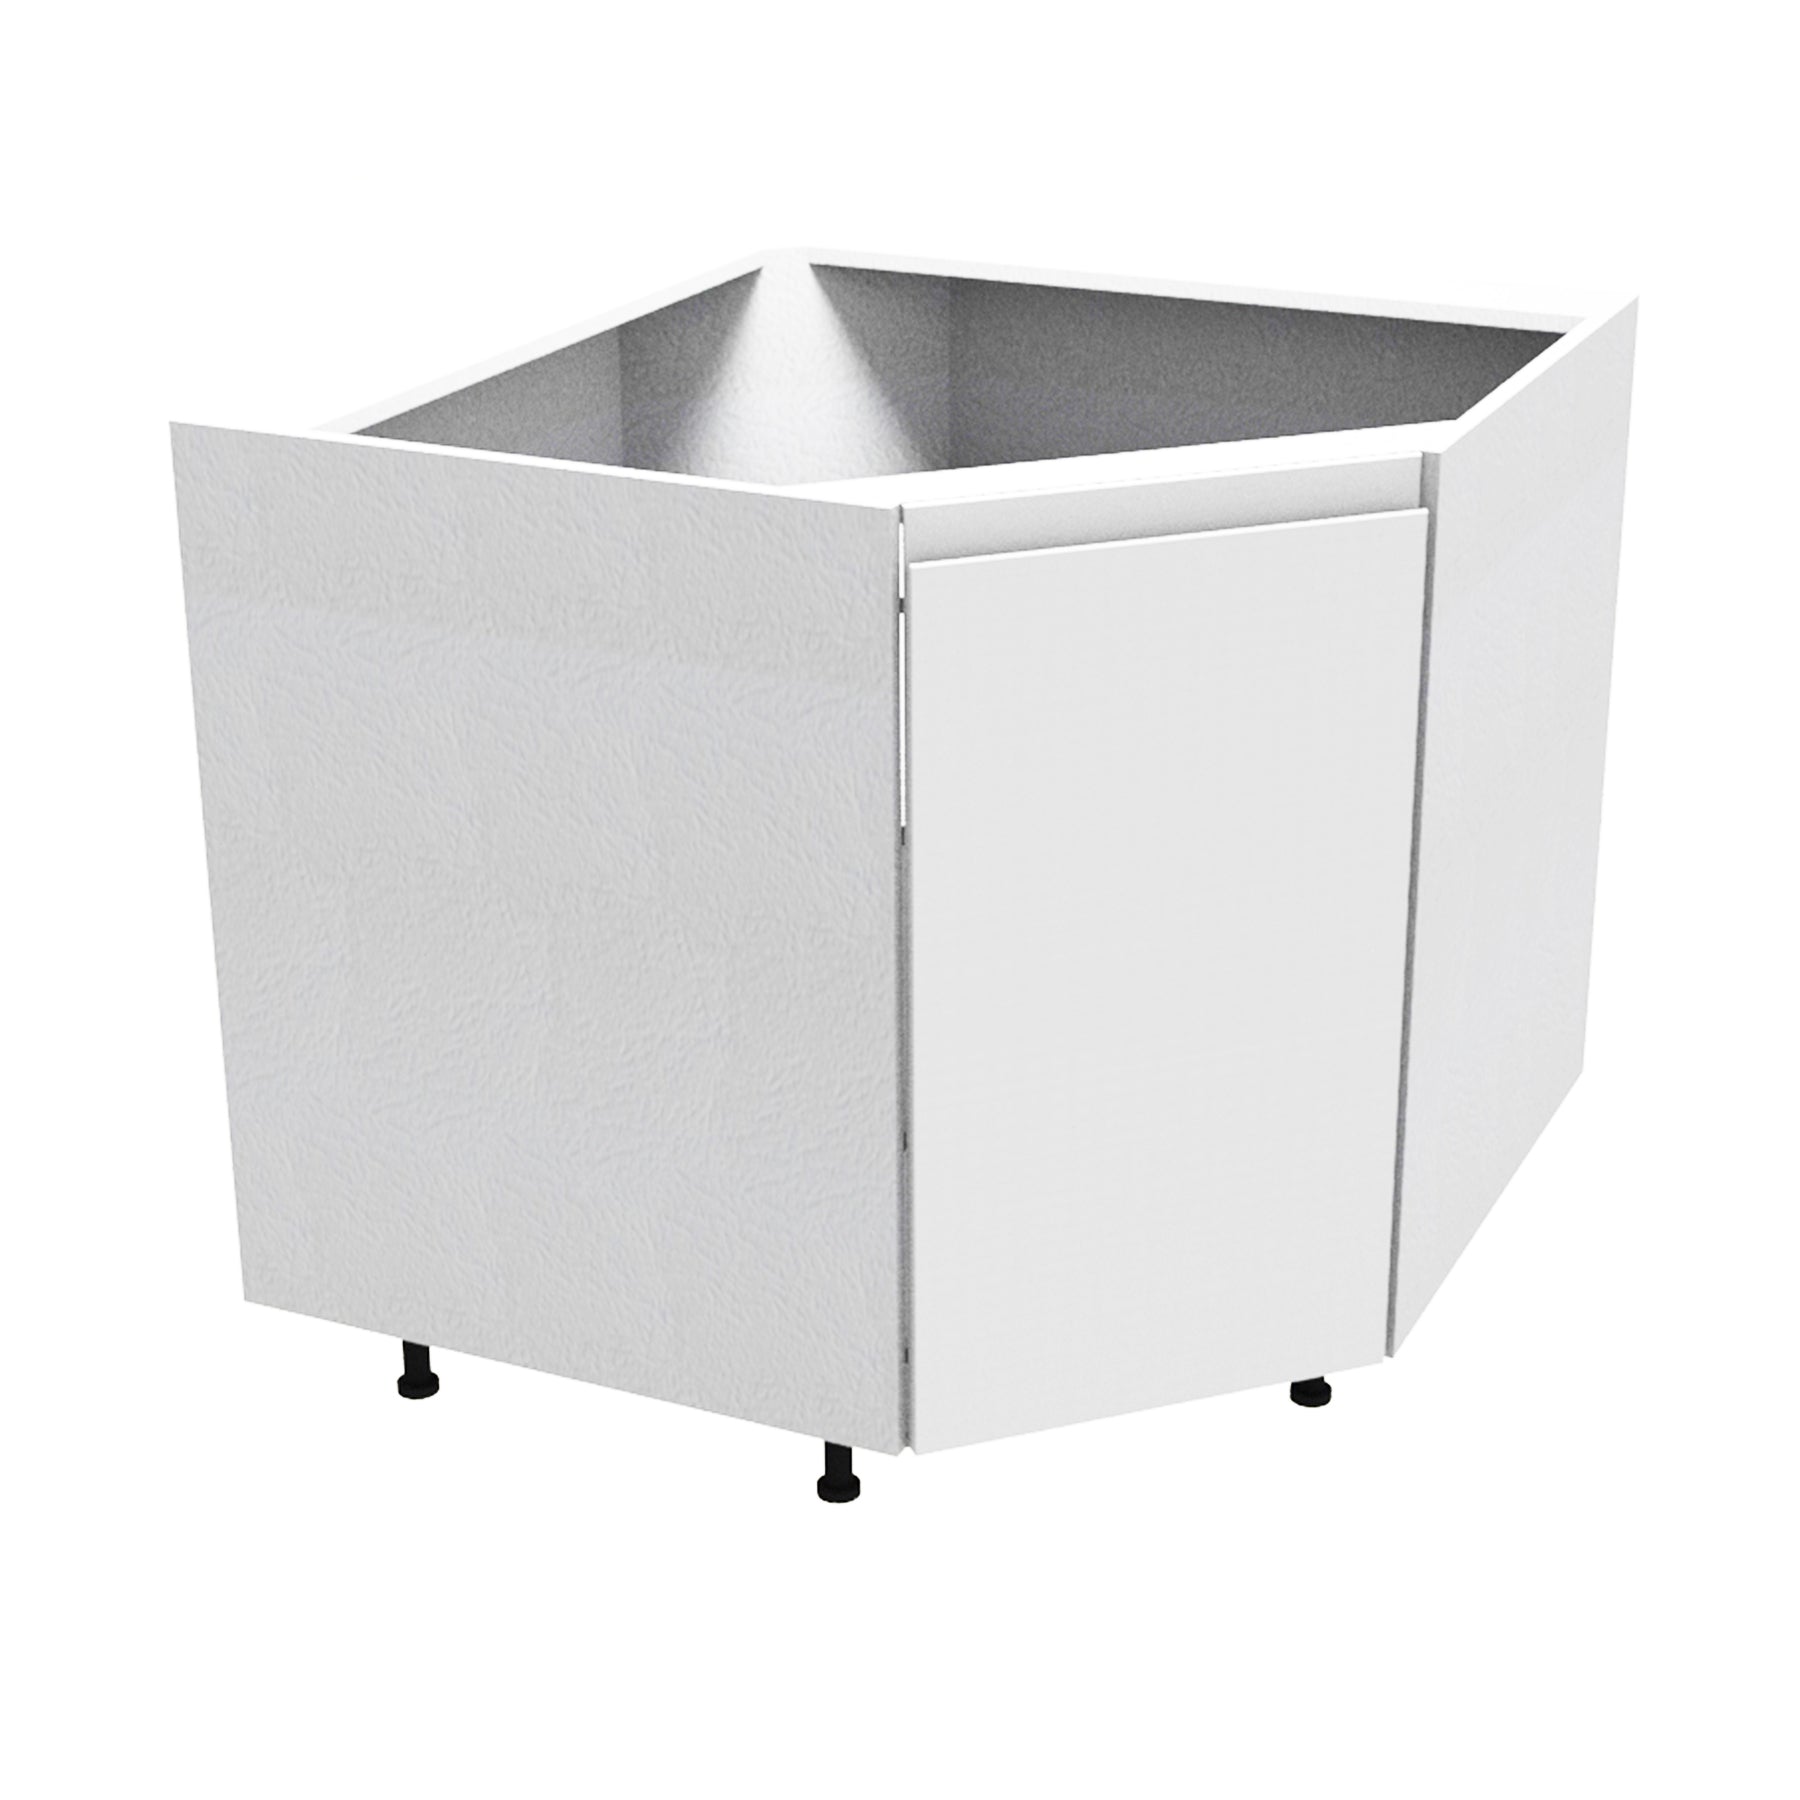 RTA - Lacquer White - Corner Sink Base Cabinet | 42"W x 34.5"H x 24"D